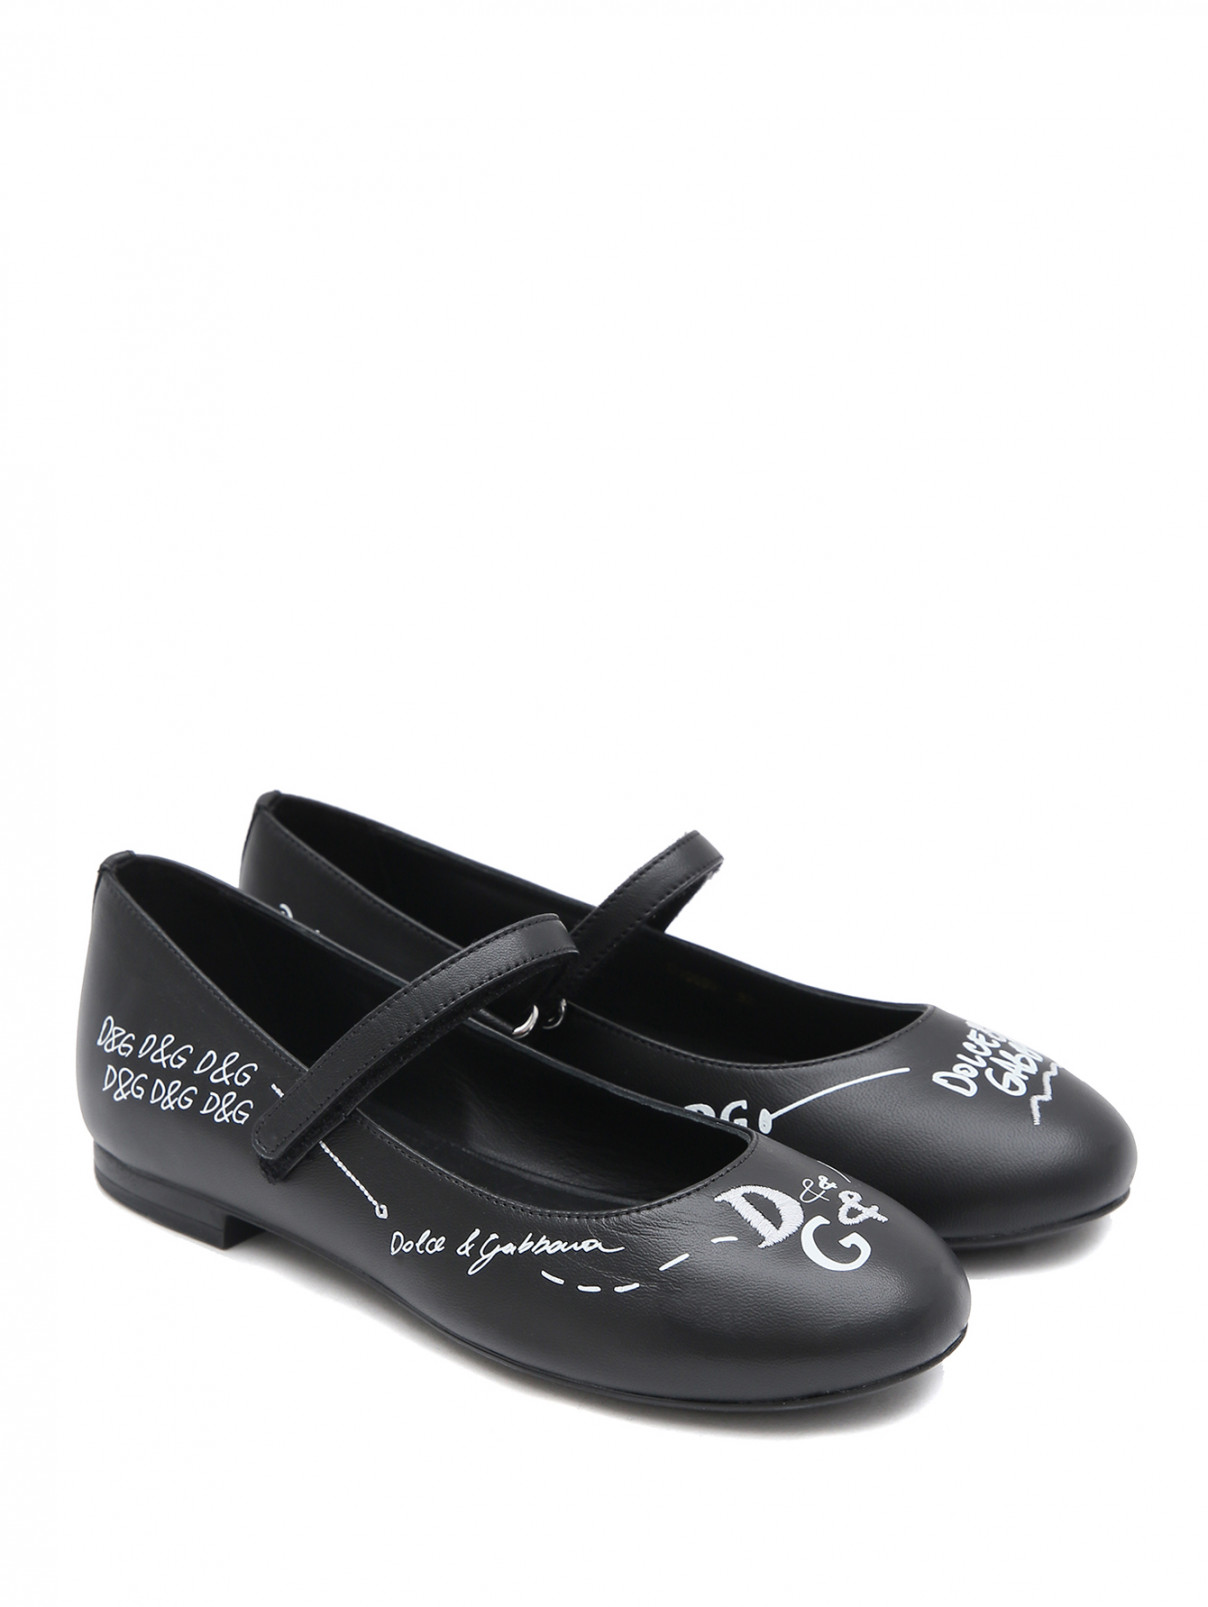 Кожаные туфли с принтом Dolce & Gabbana  –  Общий вид  – Цвет:  Черный